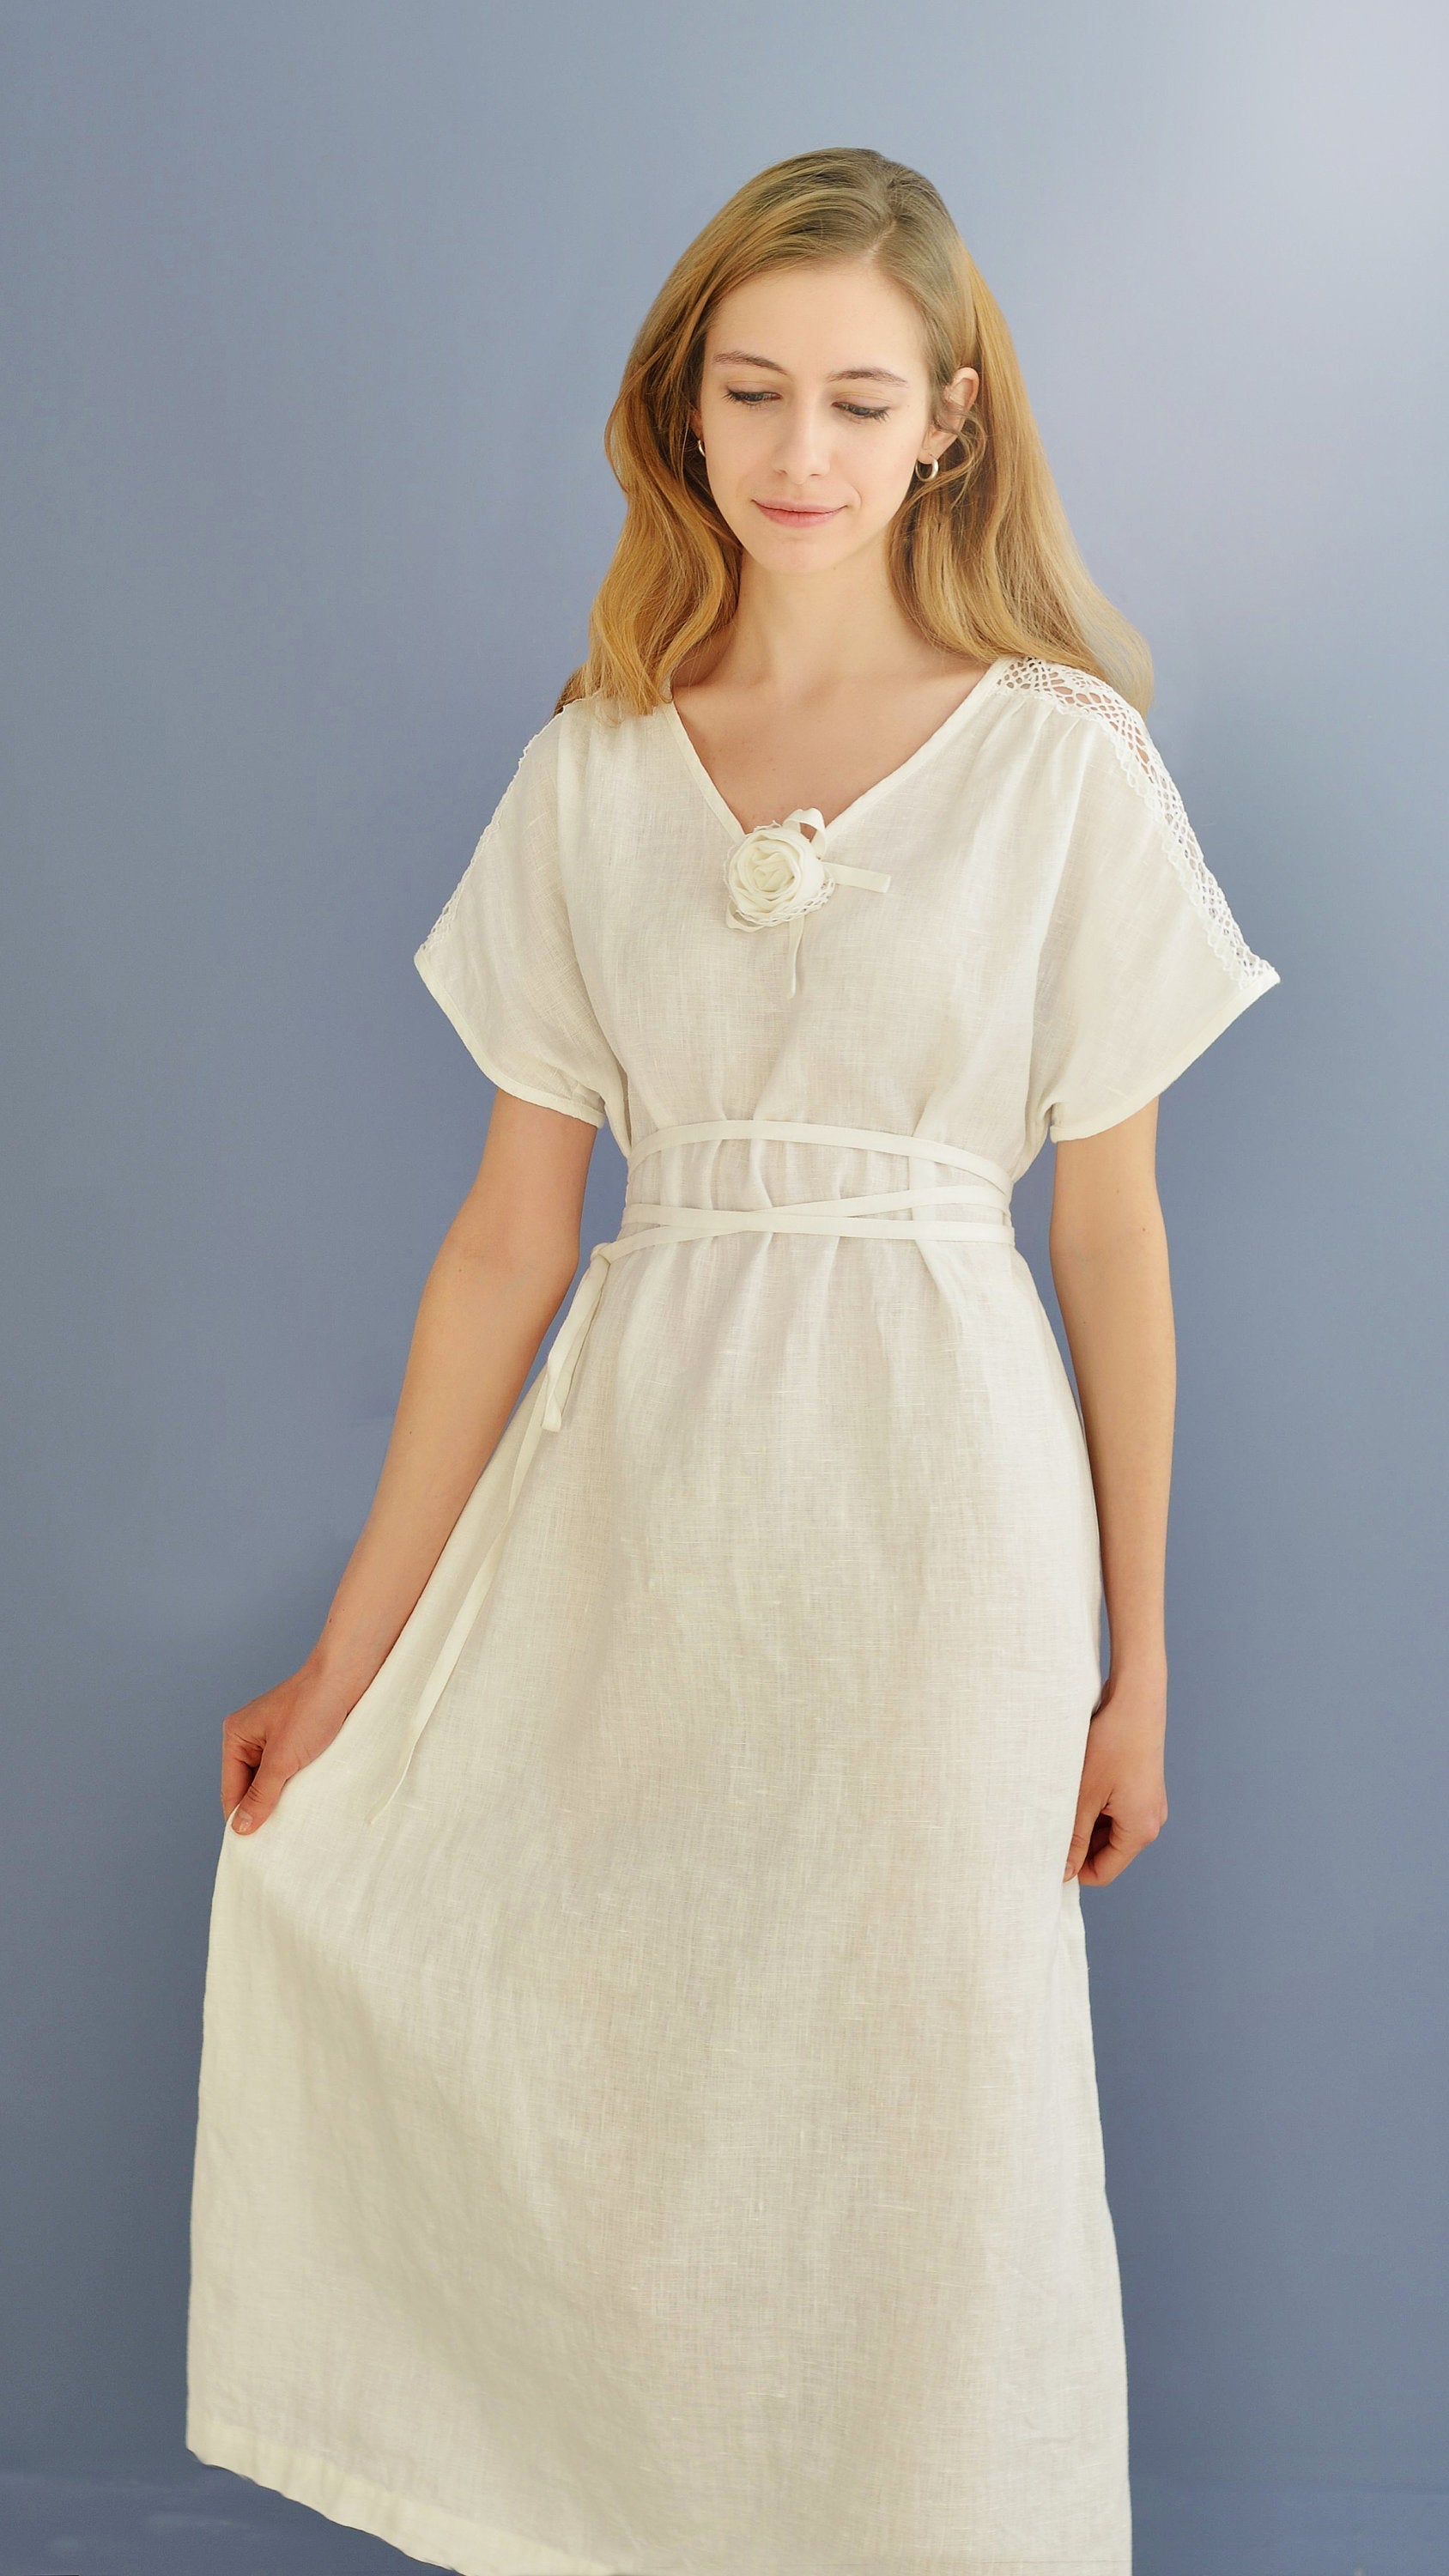 Linen Long Dress AMELIA with Lace at Shoulder Line – LGlinen